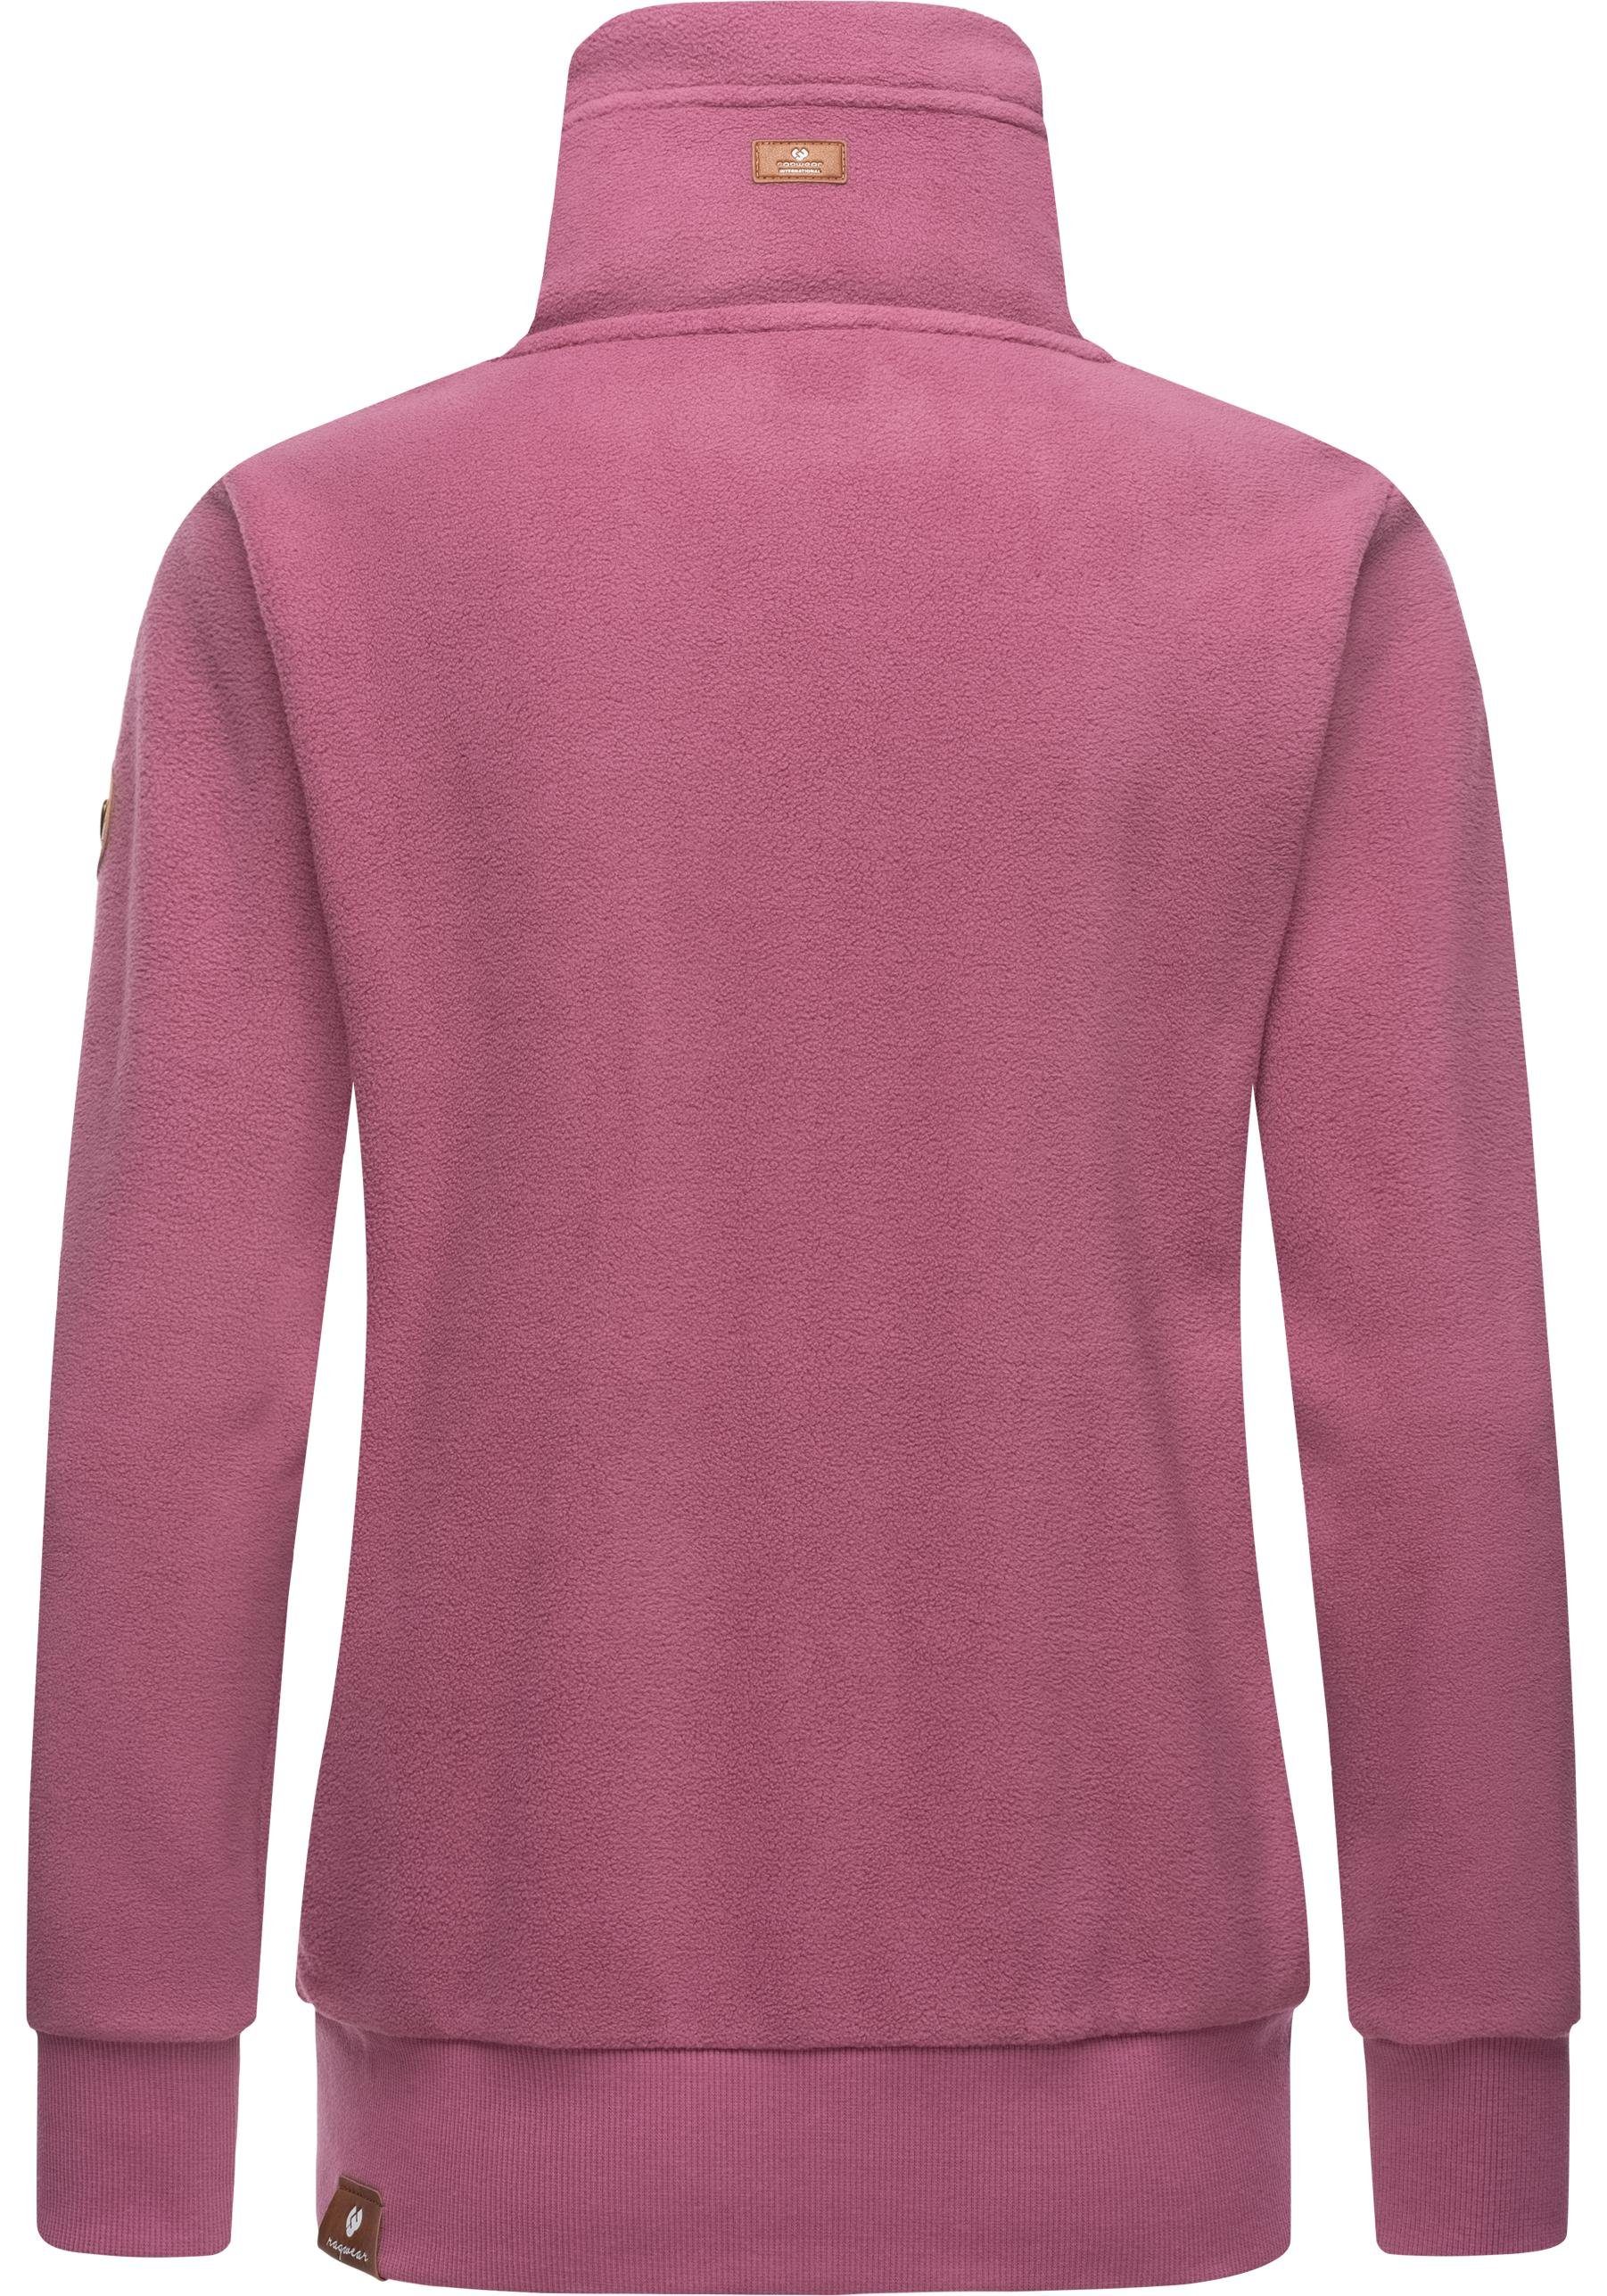 Zip-Sweater Solid Kordeln weicher mit Zip Fleece rosa Sweatjacke Ragwear Rylie Fleece